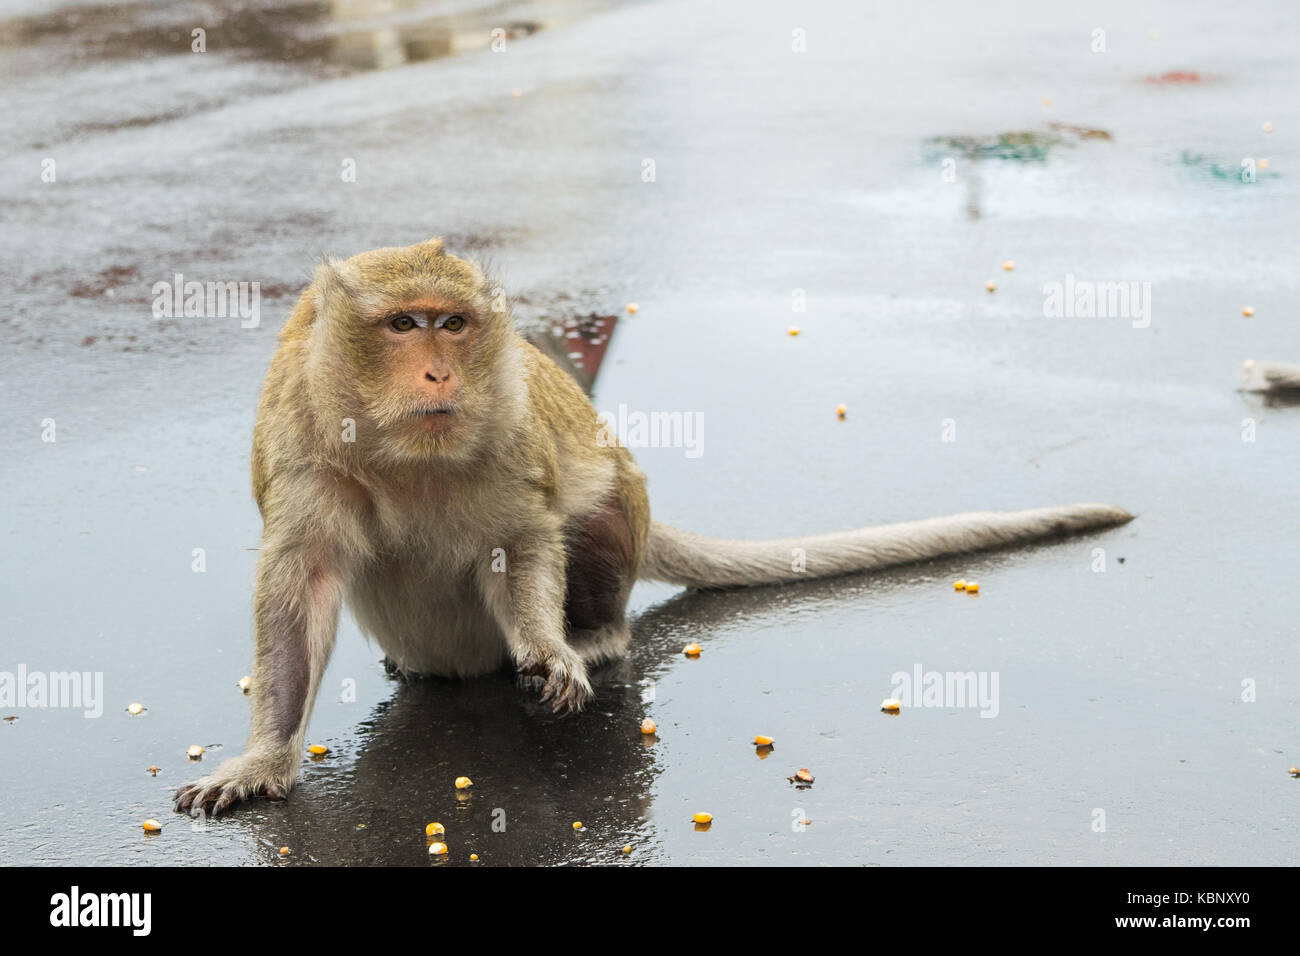 Un singe macaque attendant d'être nourris plus semences de maïs, de touristes sur un jour de pluie à Phnom Penh, Cambodge, Asie du Sud Est, Chine Indo Banque D'Images